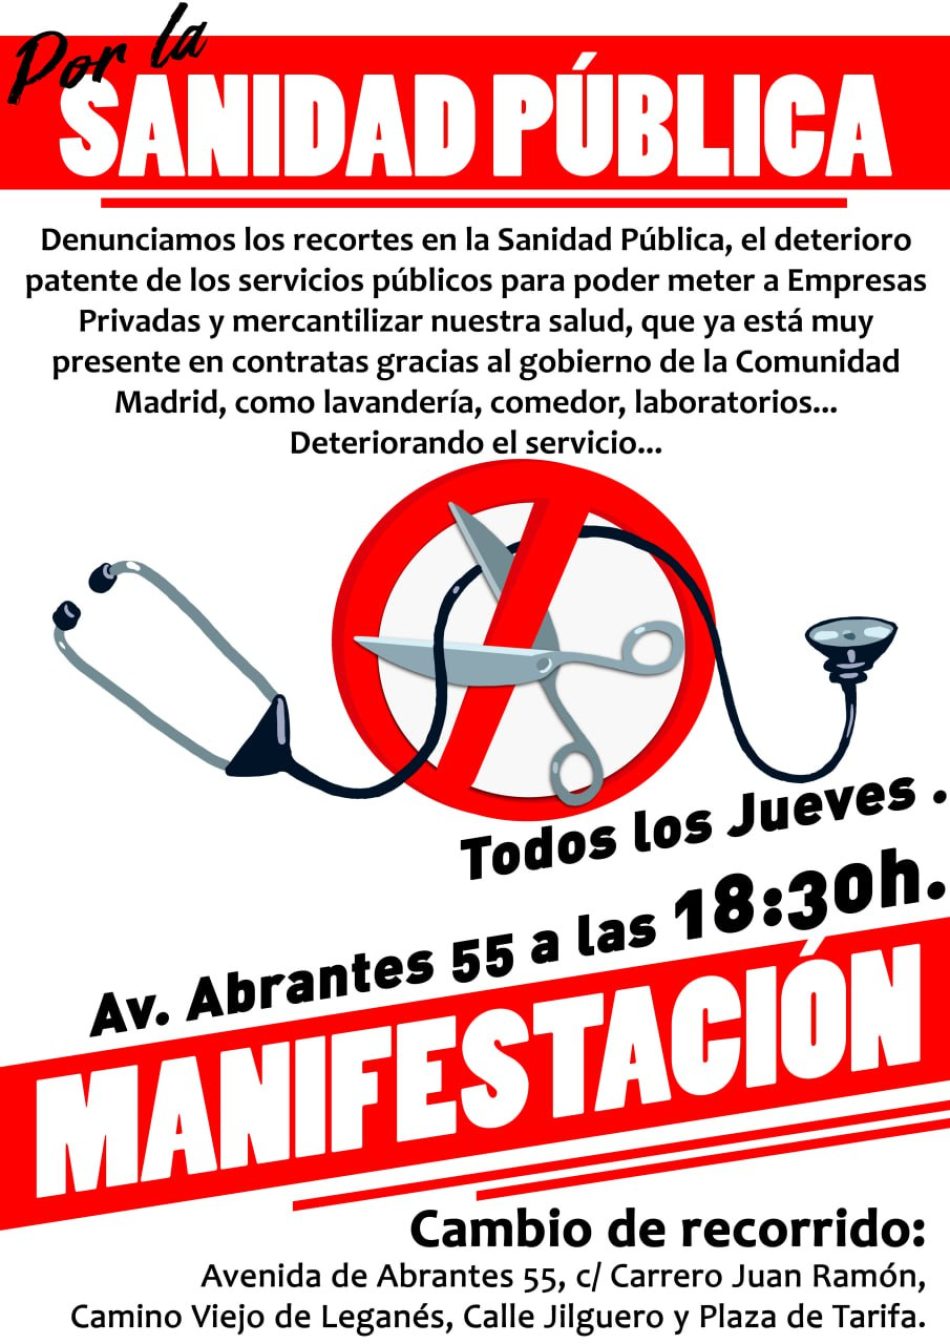 En defensa de la Sanidad Pública, manifestación en Carabanchel: jueves 25 de abril